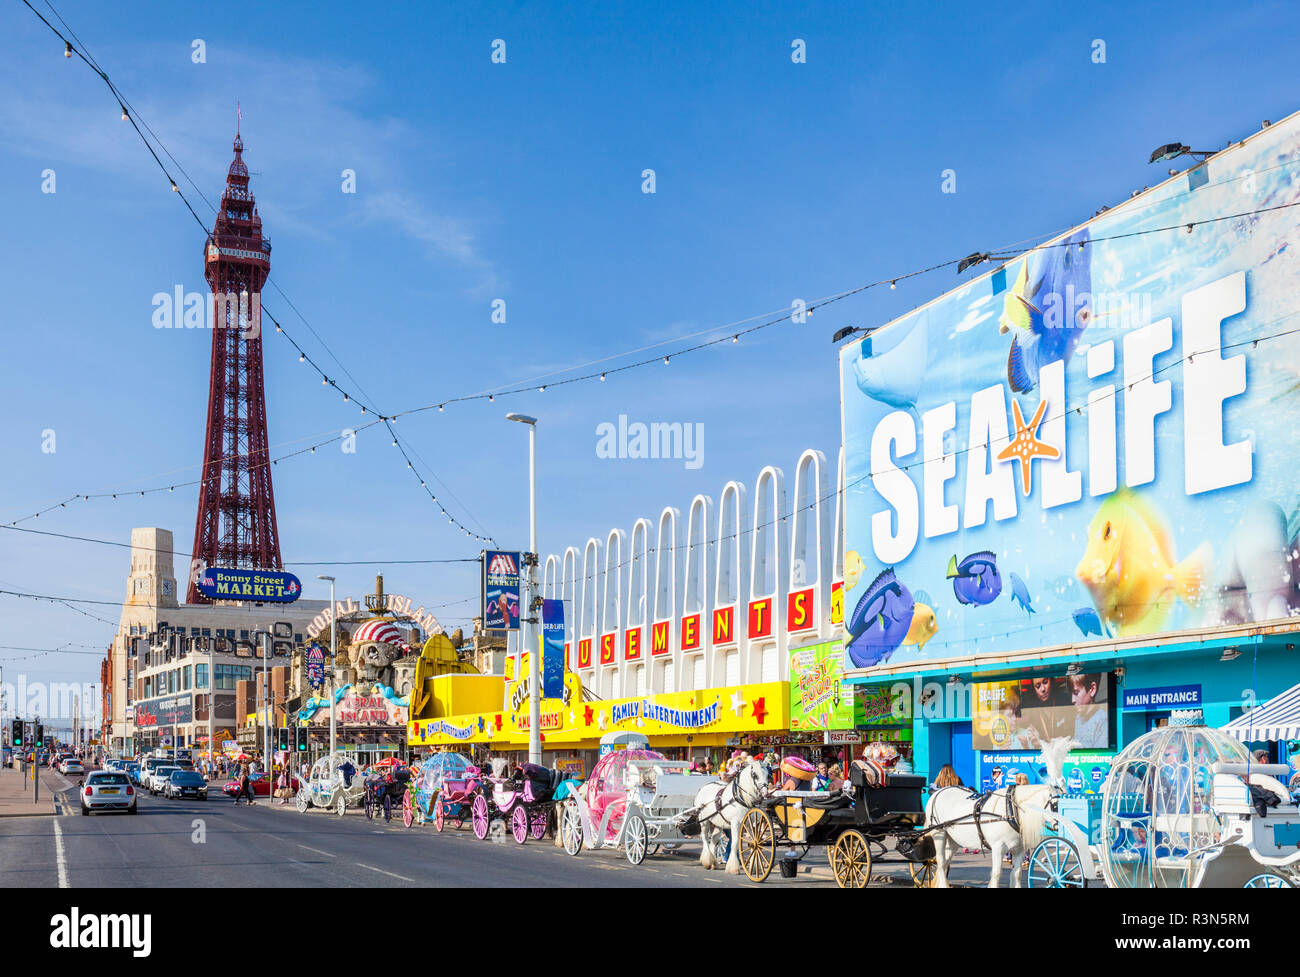 La tour de Blackpool Promenade en bord de plage avec le centre Sealife amusements et calèches Blackpool Lancashire England GB UK Europe Banque D'Images